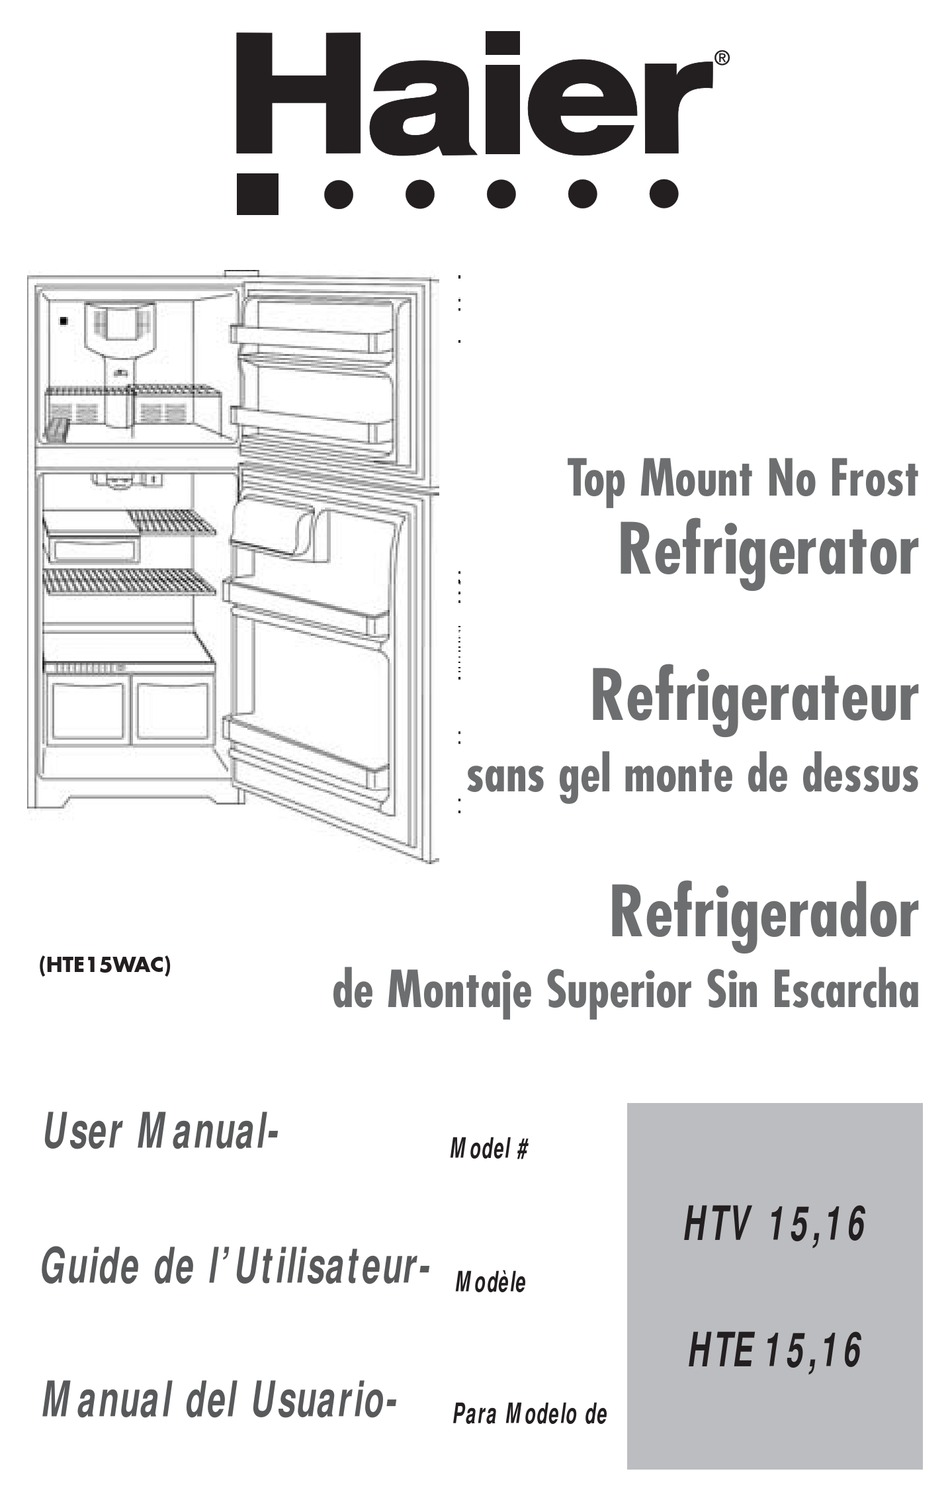 Dial De Temperatura Ajustable; Controle De Temperatura Del Freezer; Estantes Interiores Del Refrigerador - Haier User Manual [Page 49] | ManualsLib